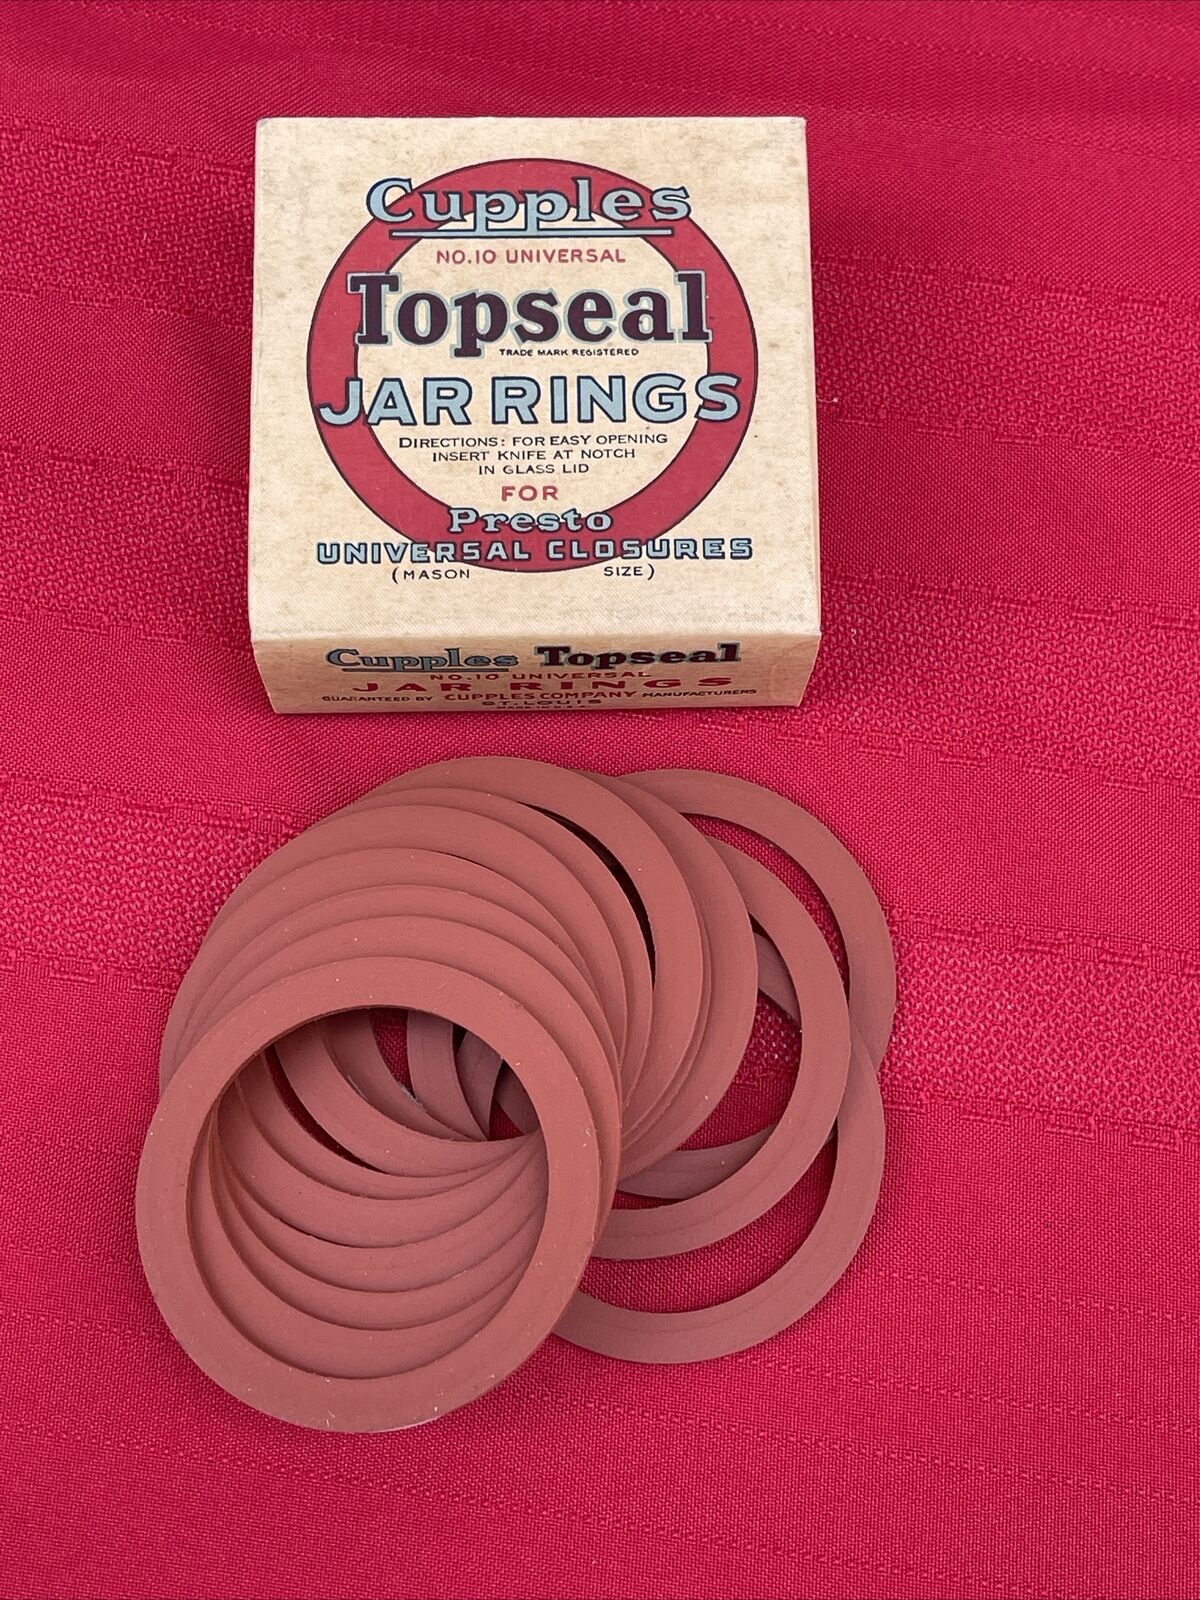 Vintage Box Of Cupples Top Seal Jar Rings-unused